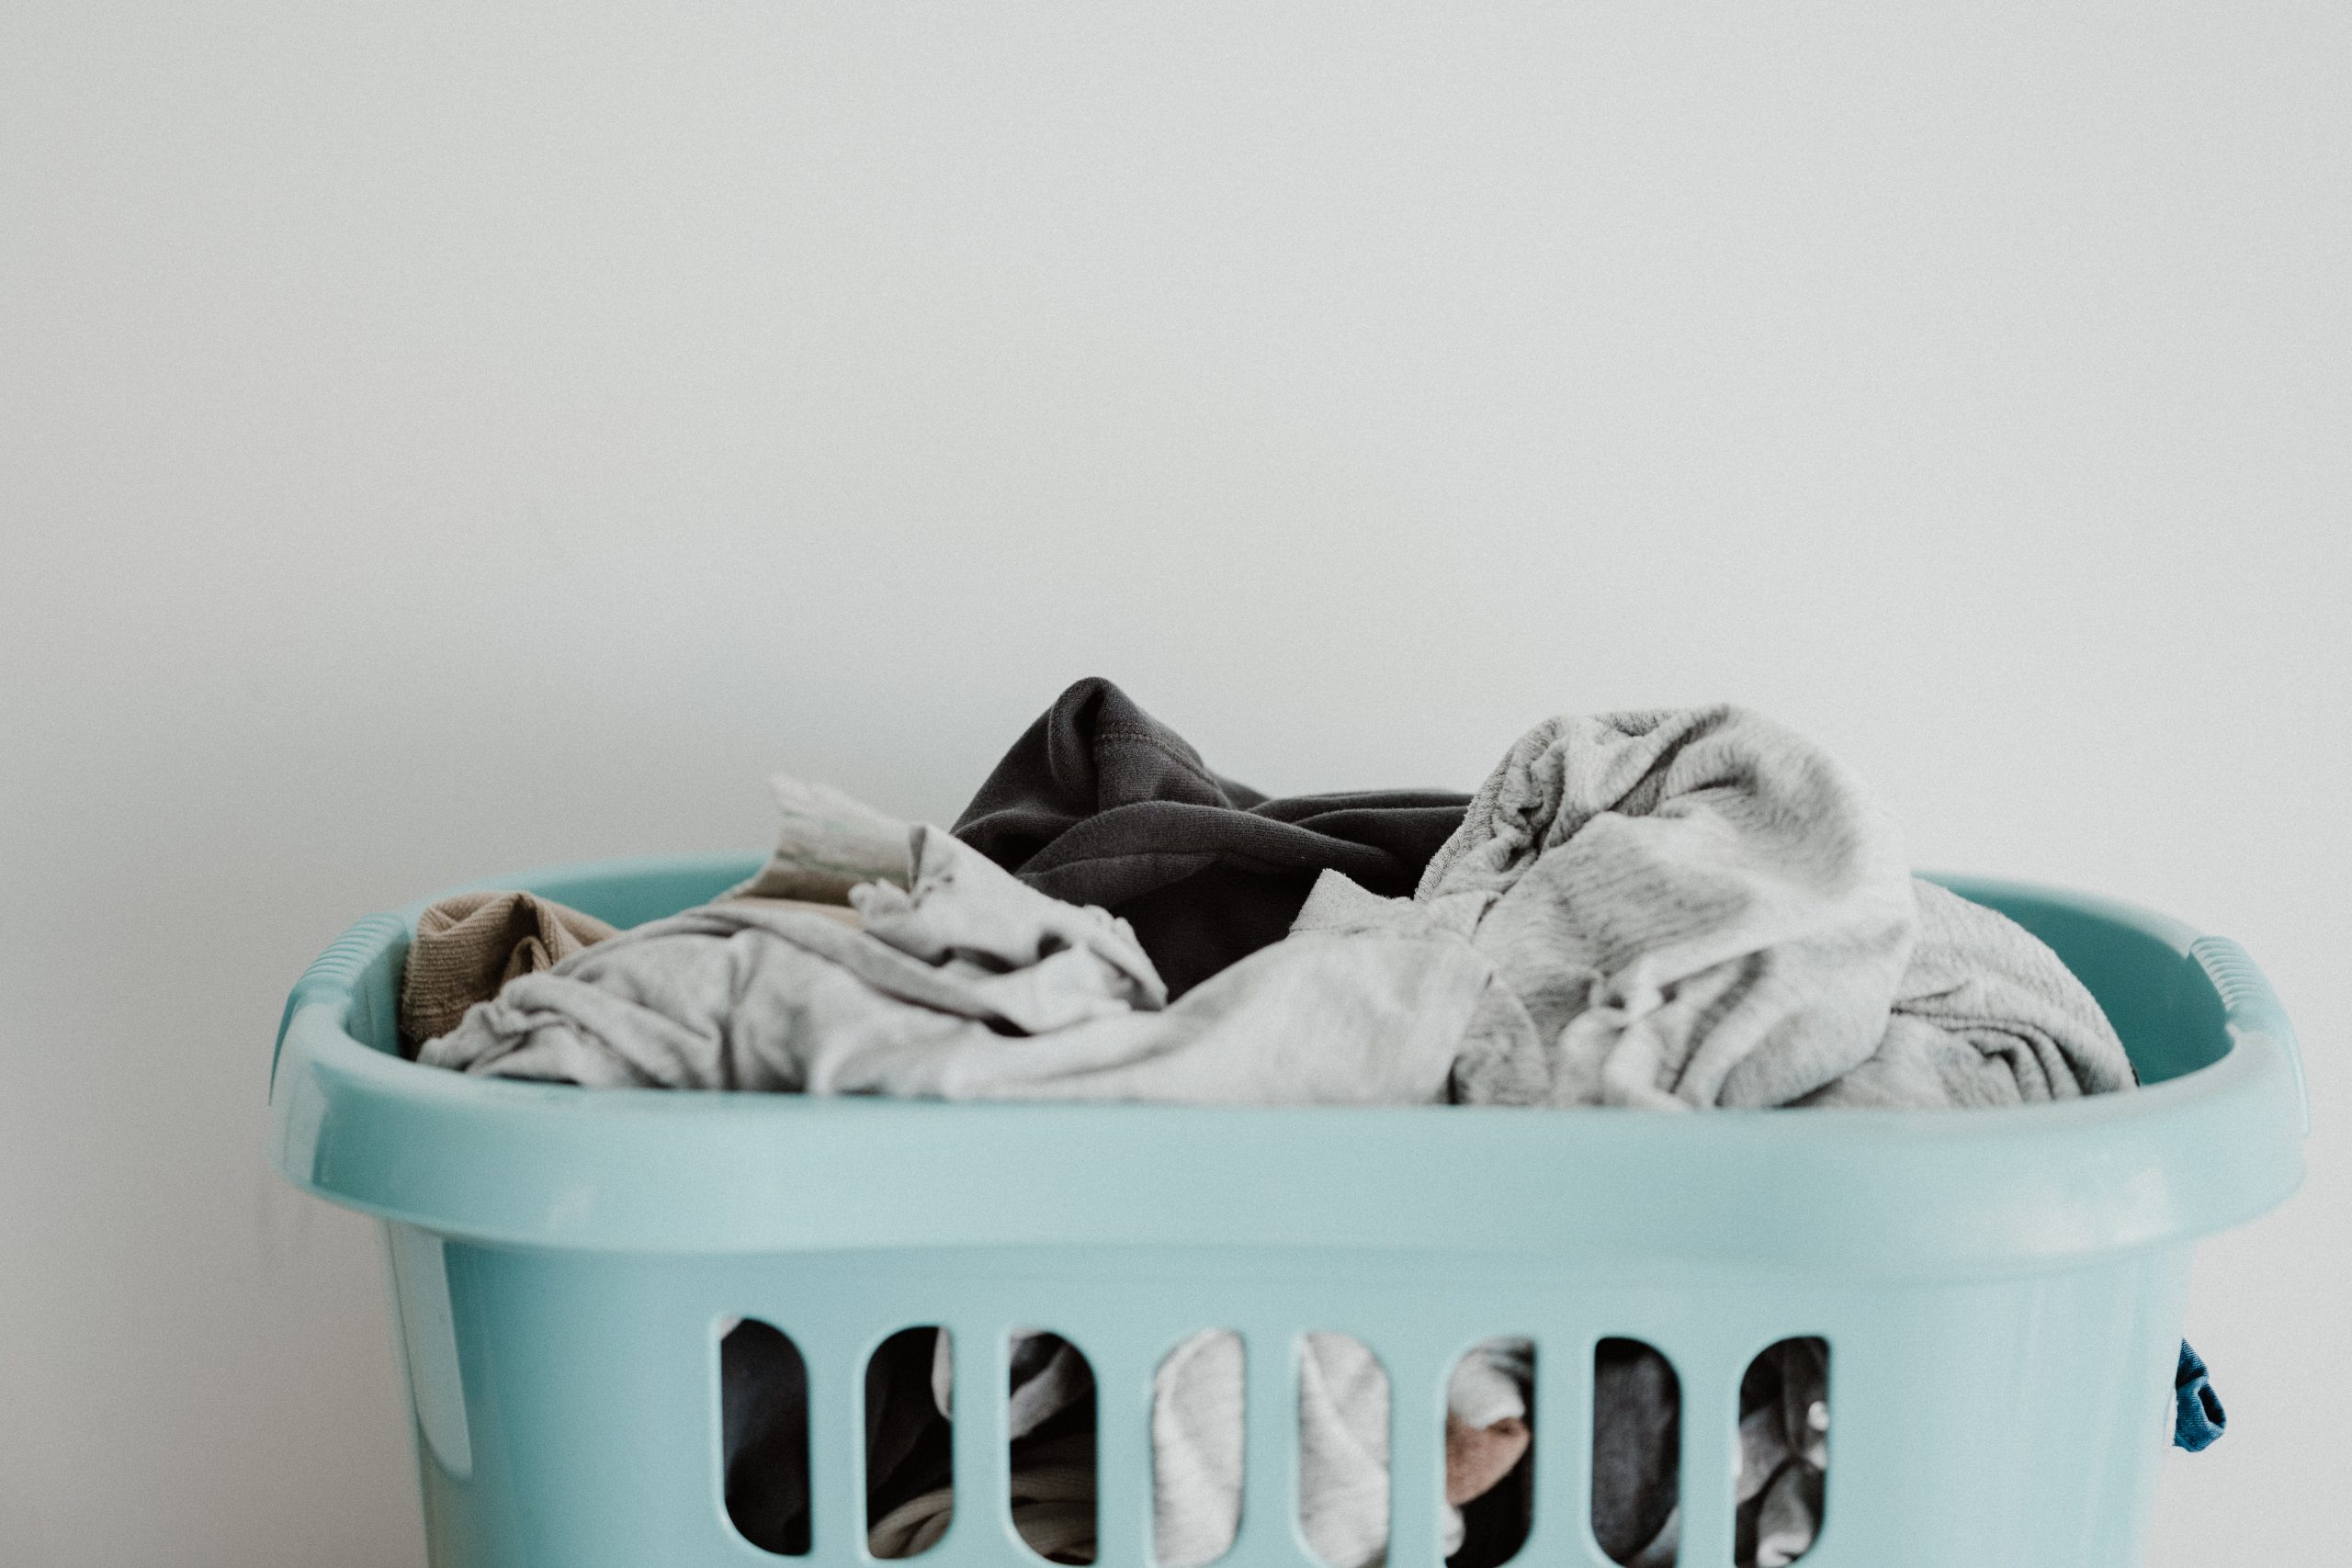 Comment faire sa propre lessive maison ? 43